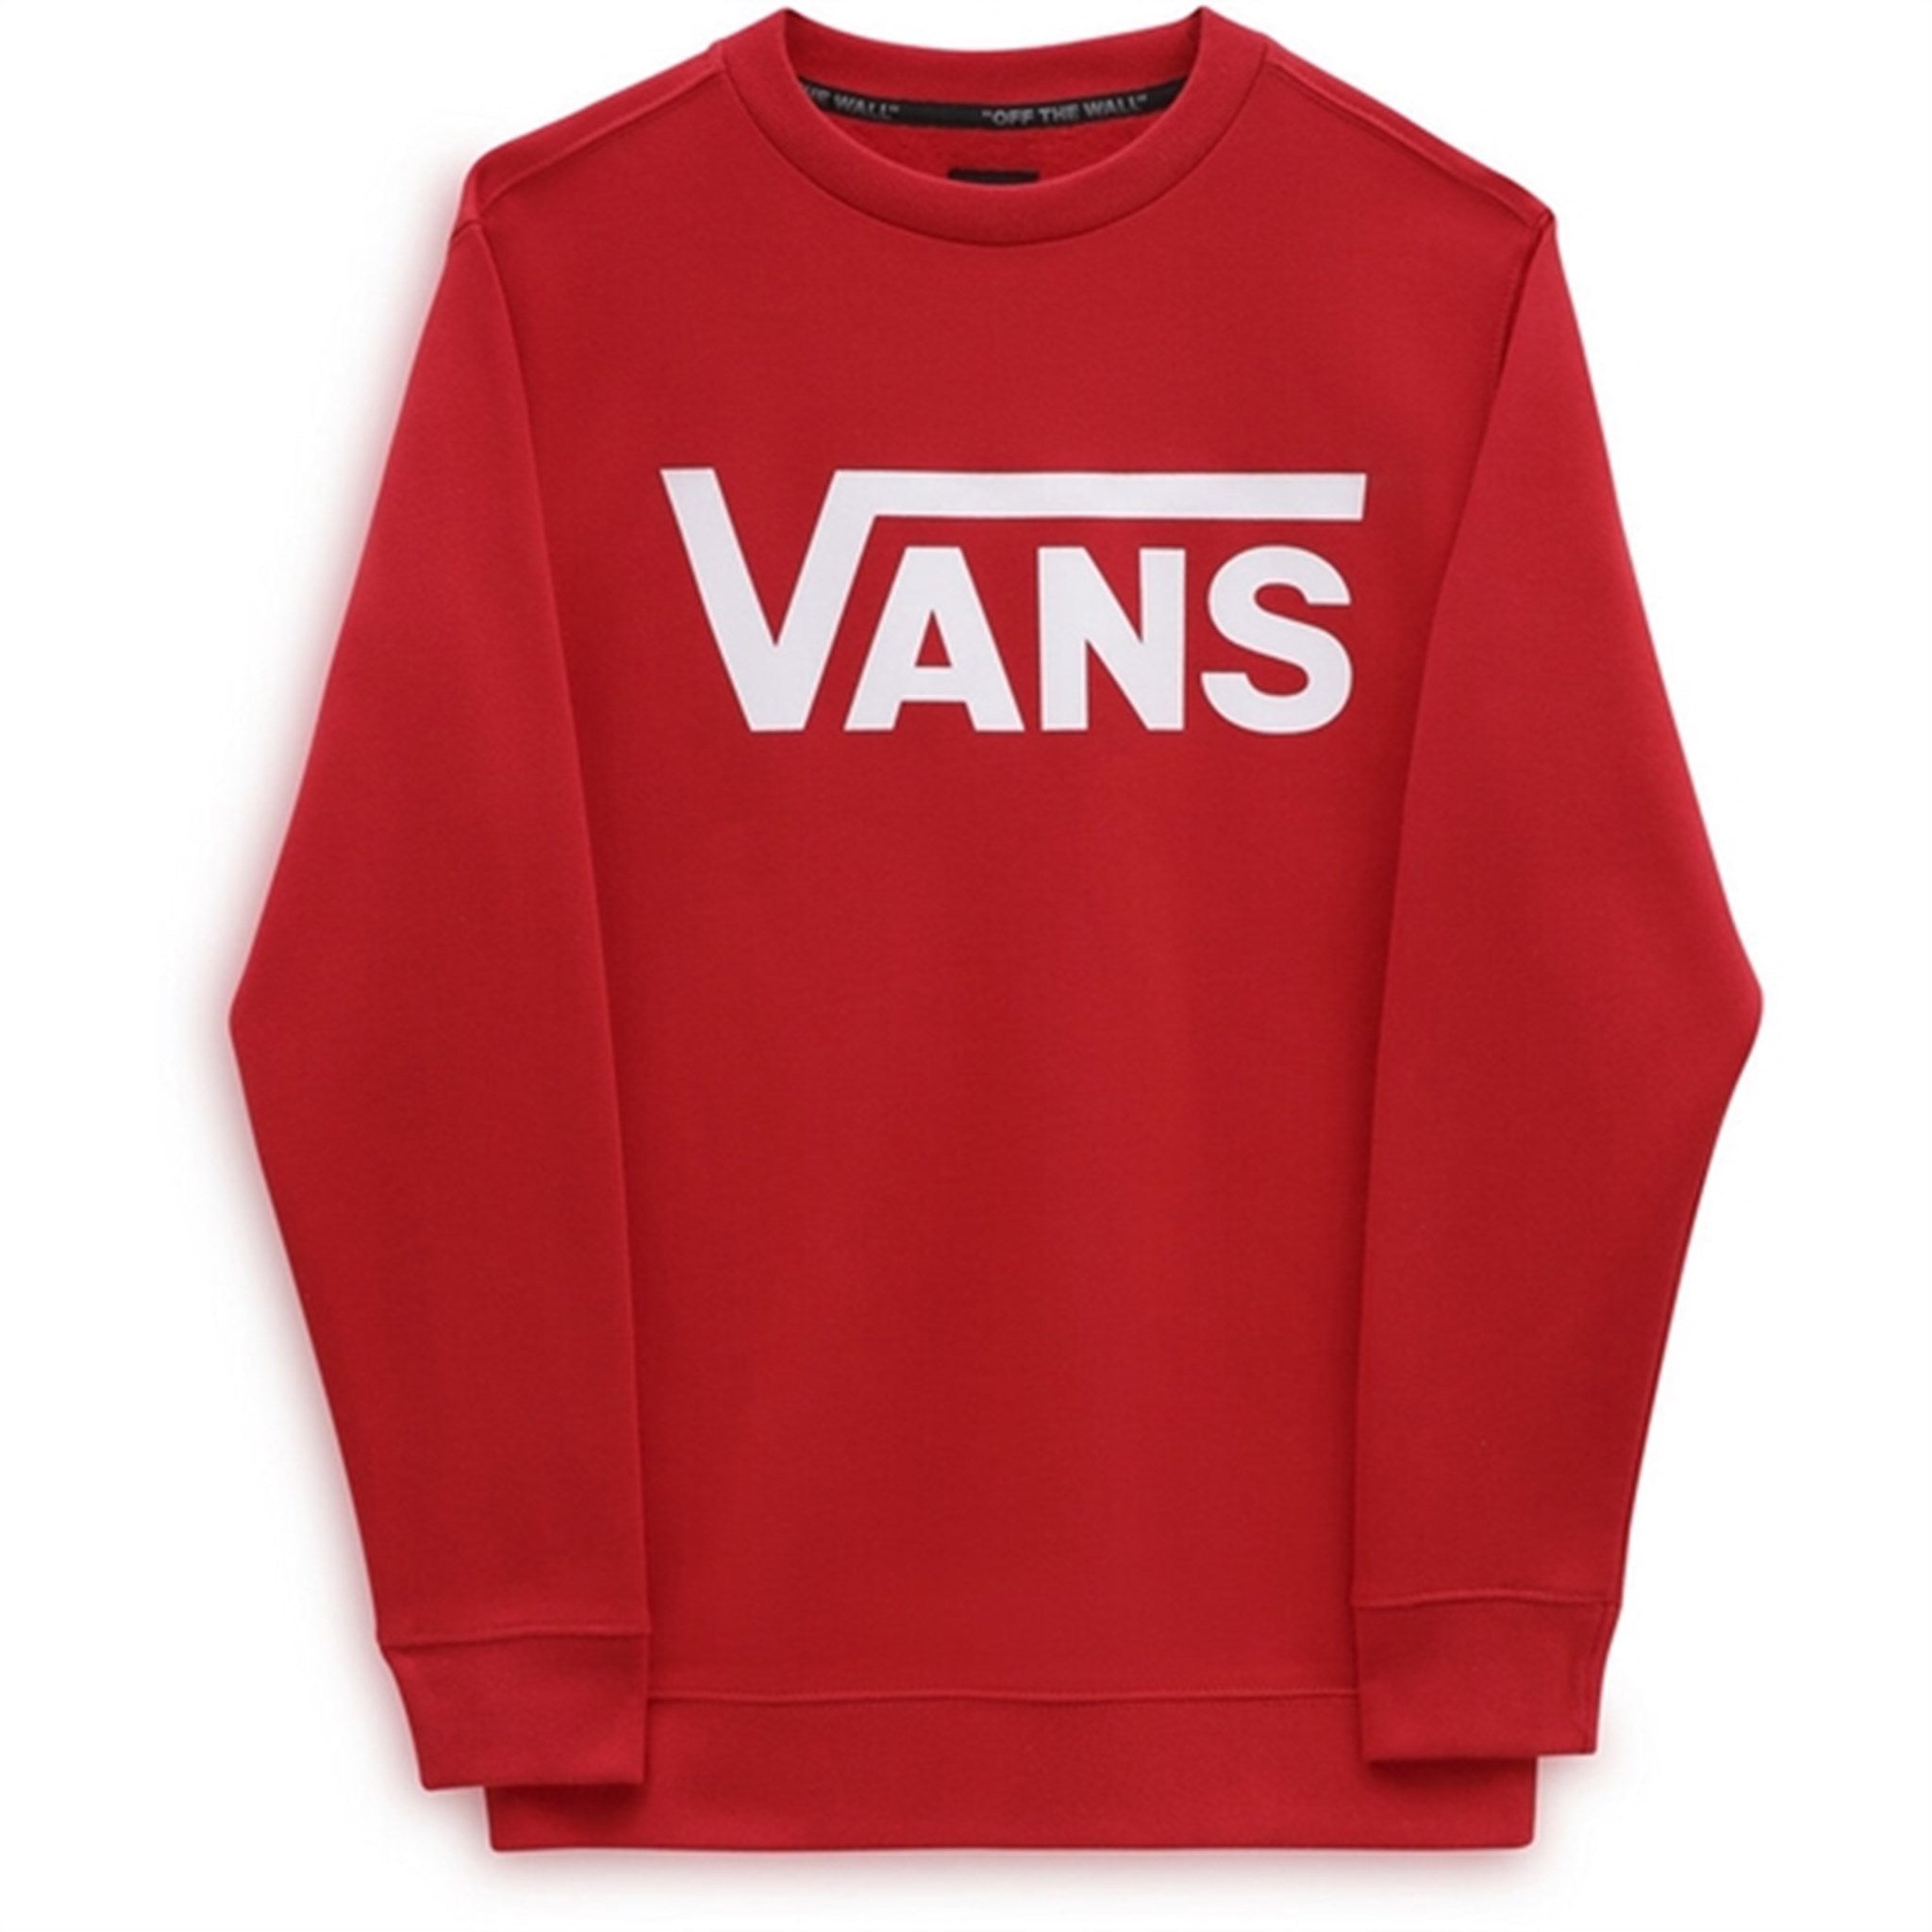 VANS By Vans Classic Crew Sweatshirt True Red/White